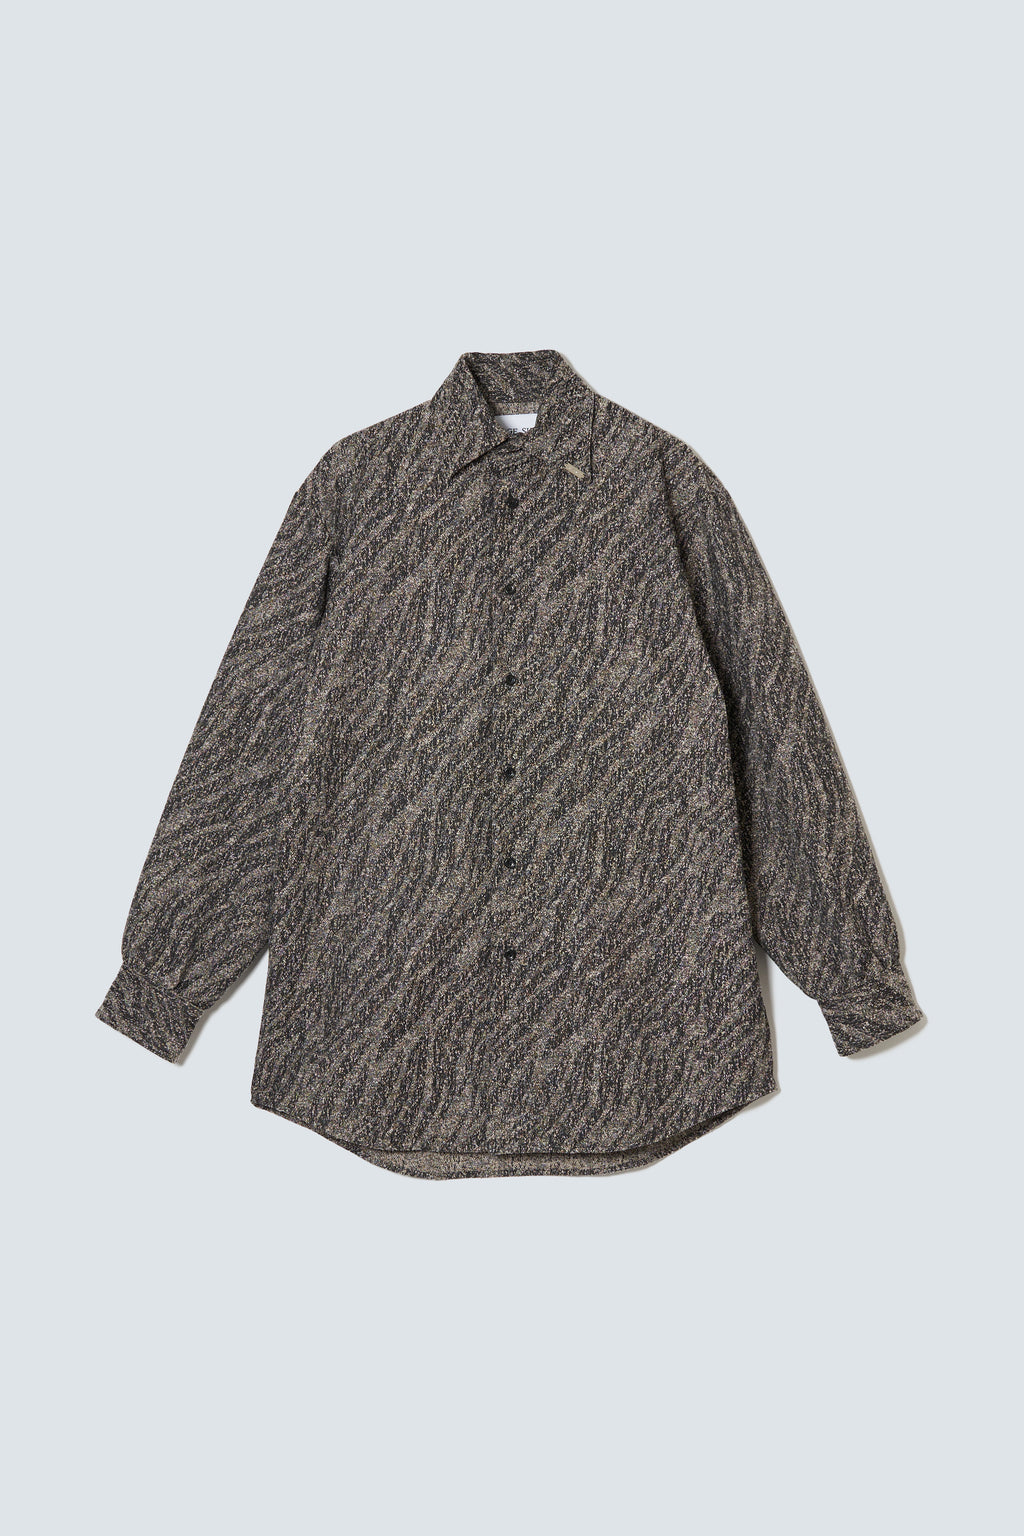 【予約商品】"Sazare"Pebble Tweed Shirt